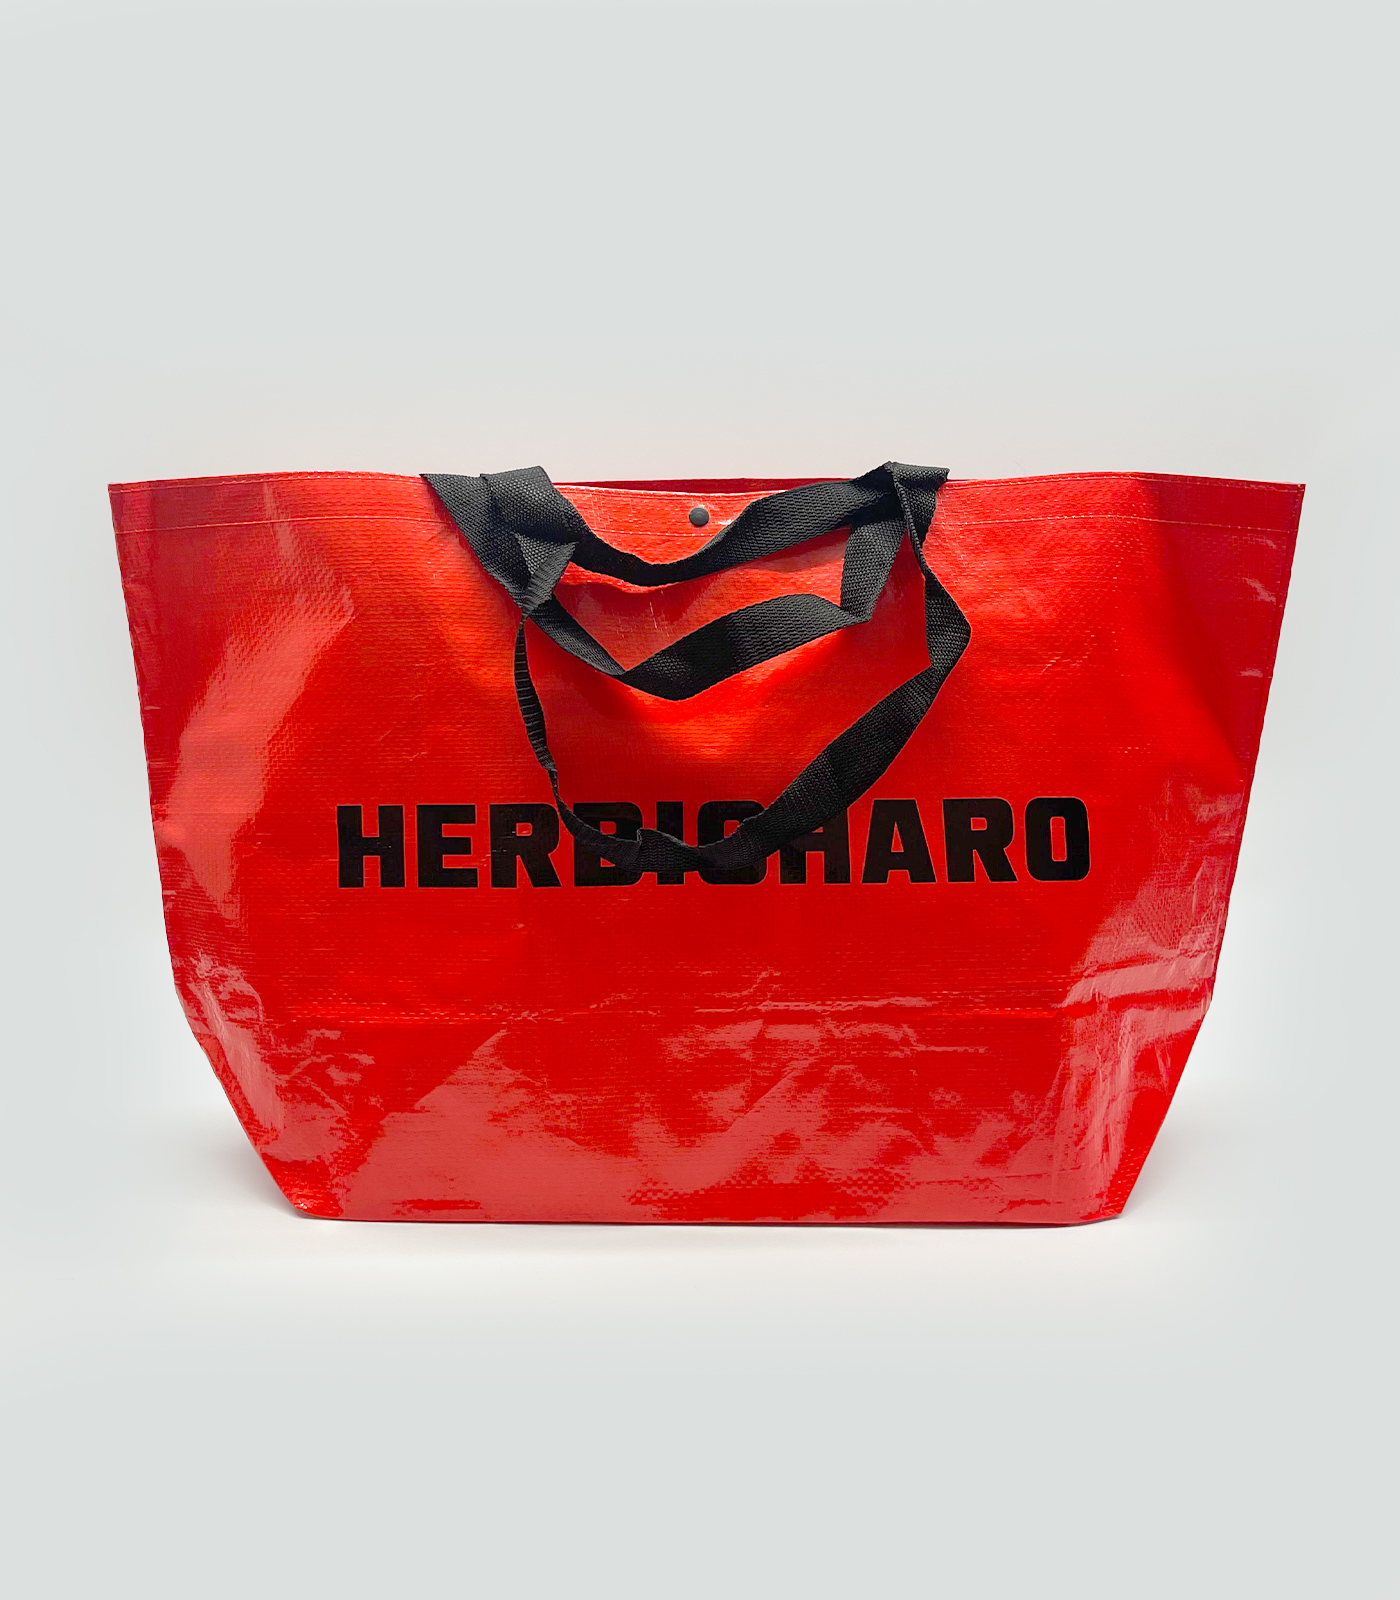 HERBIGHARO MARKET BAG RED